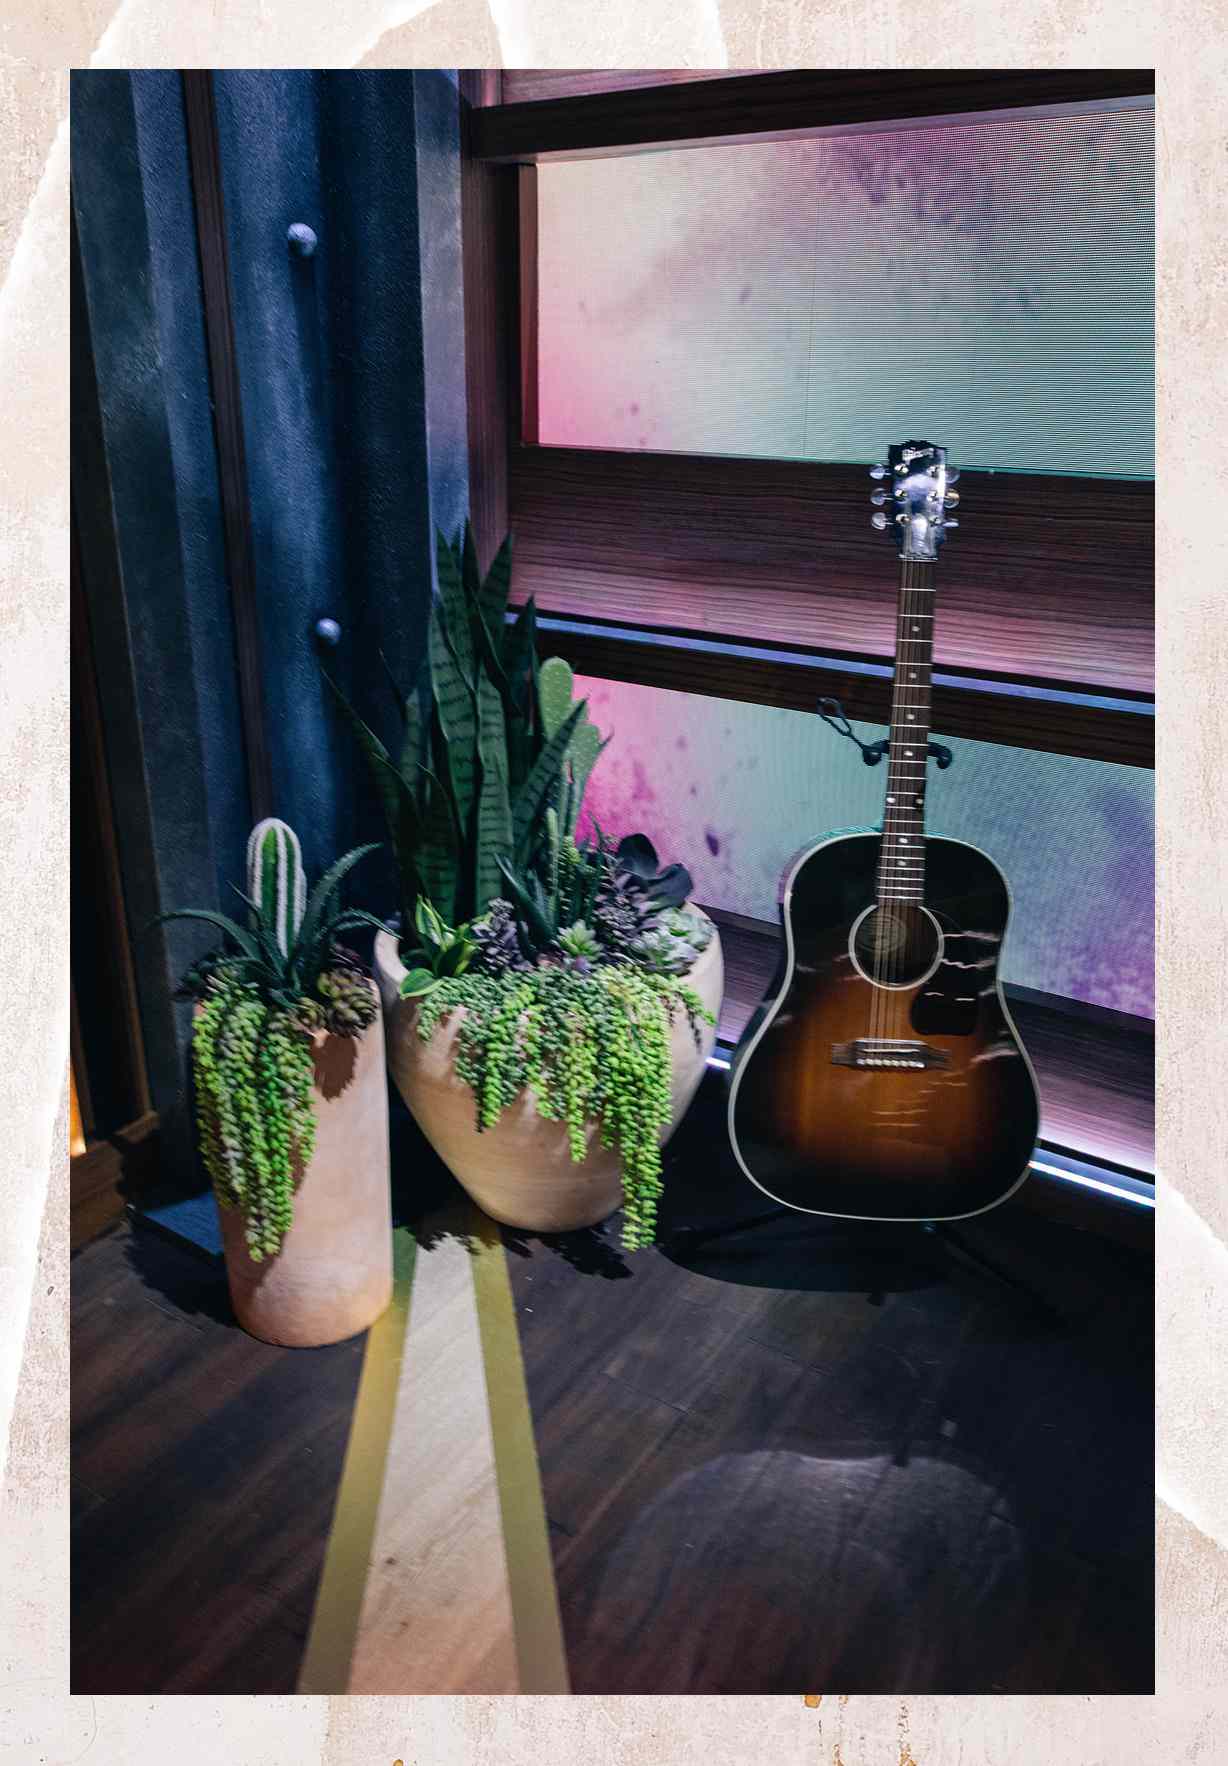 Gitarre und Pflanzen in der Ecke des The Kelly Clarkson Show-Sets